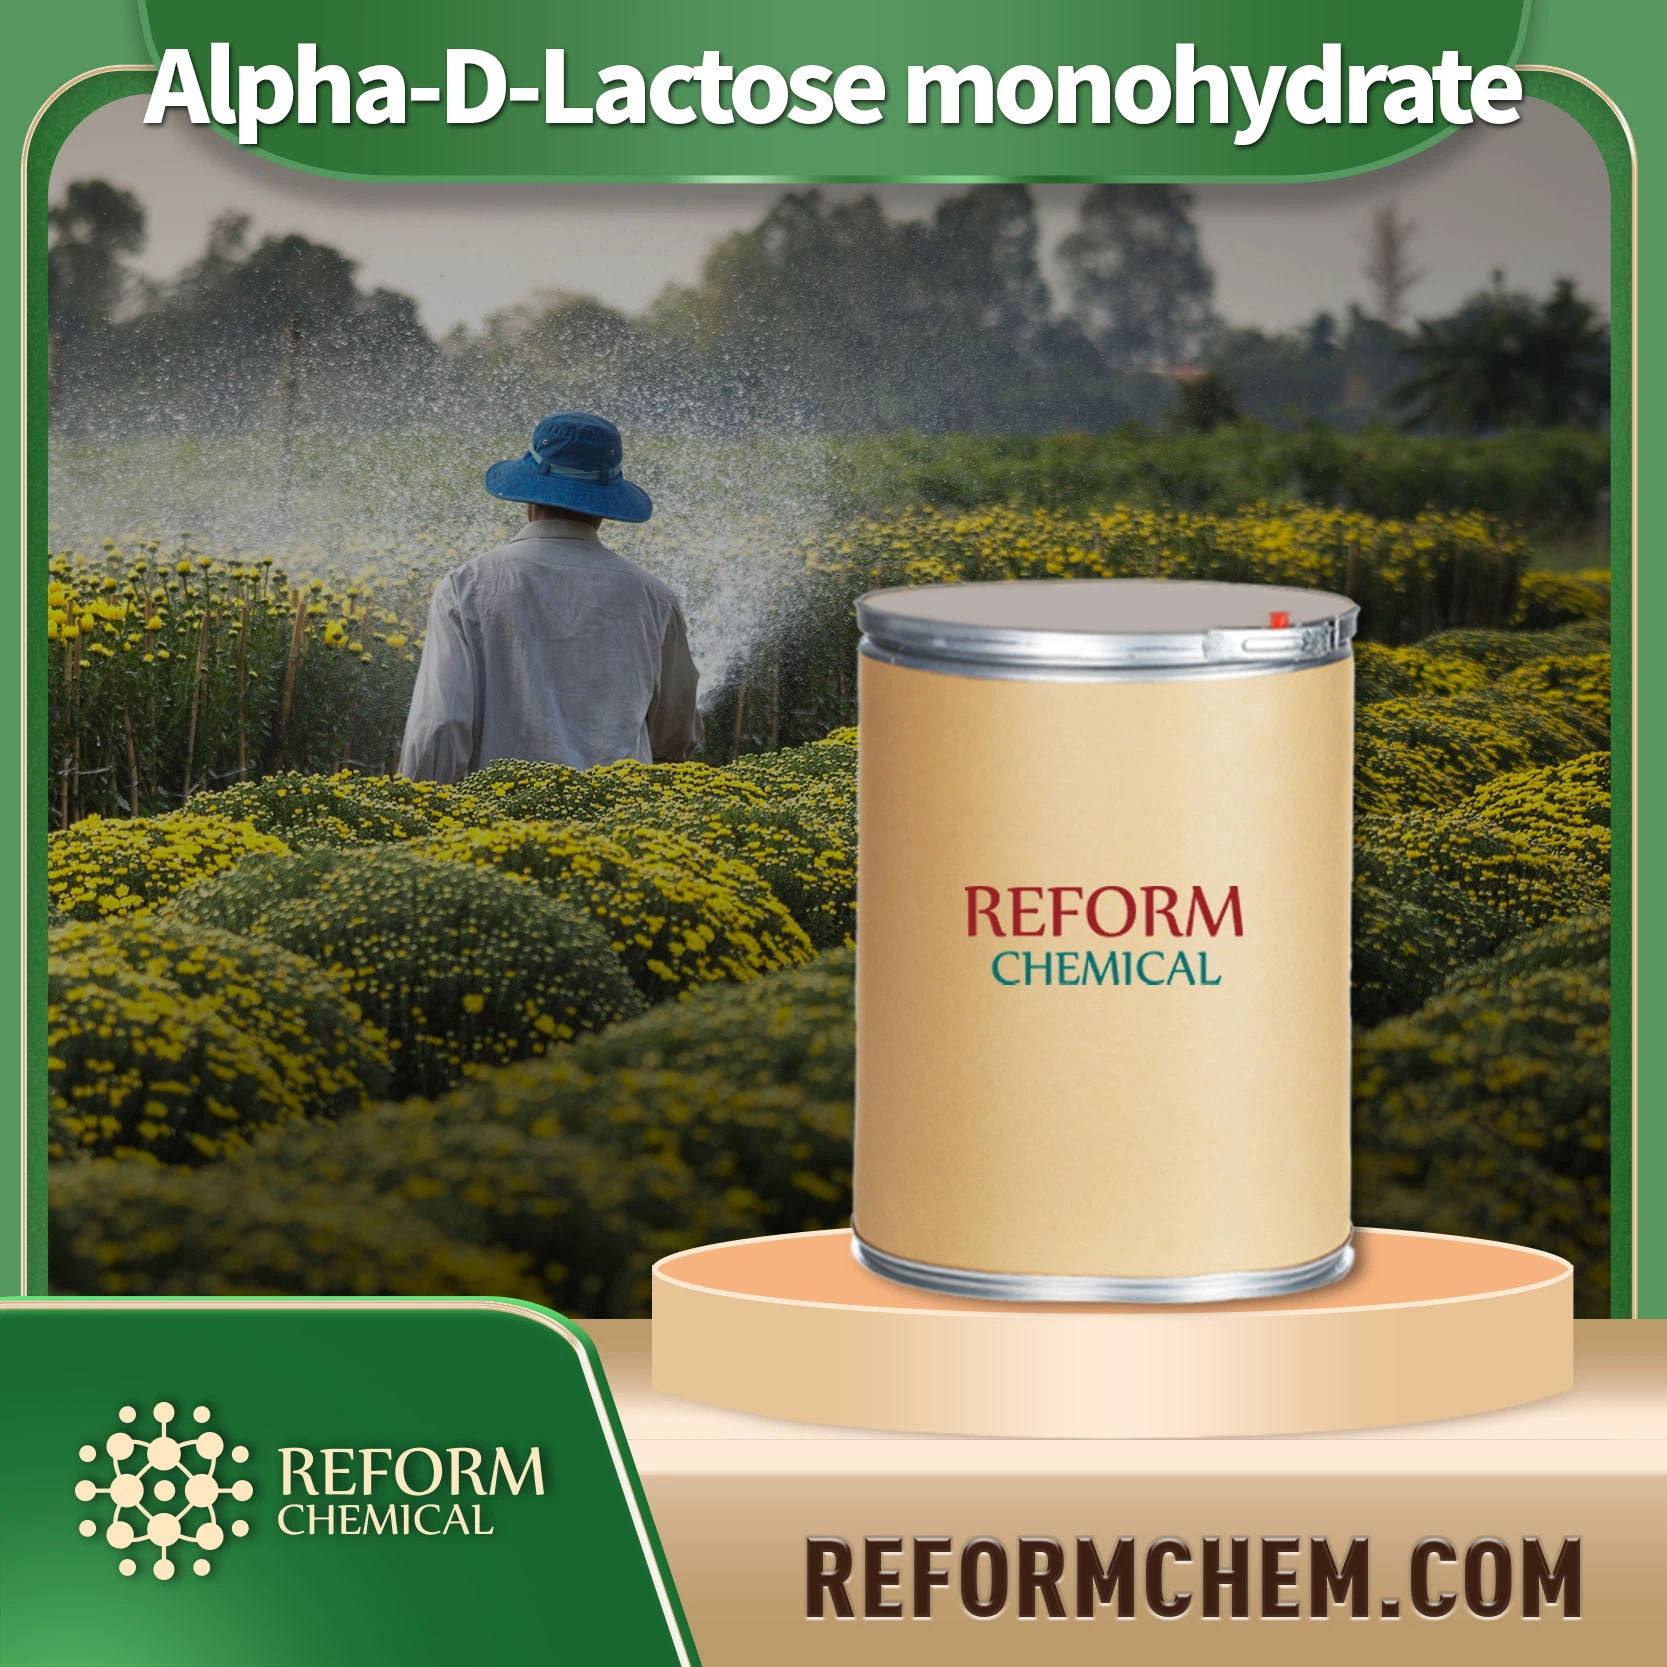 Alpha-D-Lactose monohydrate